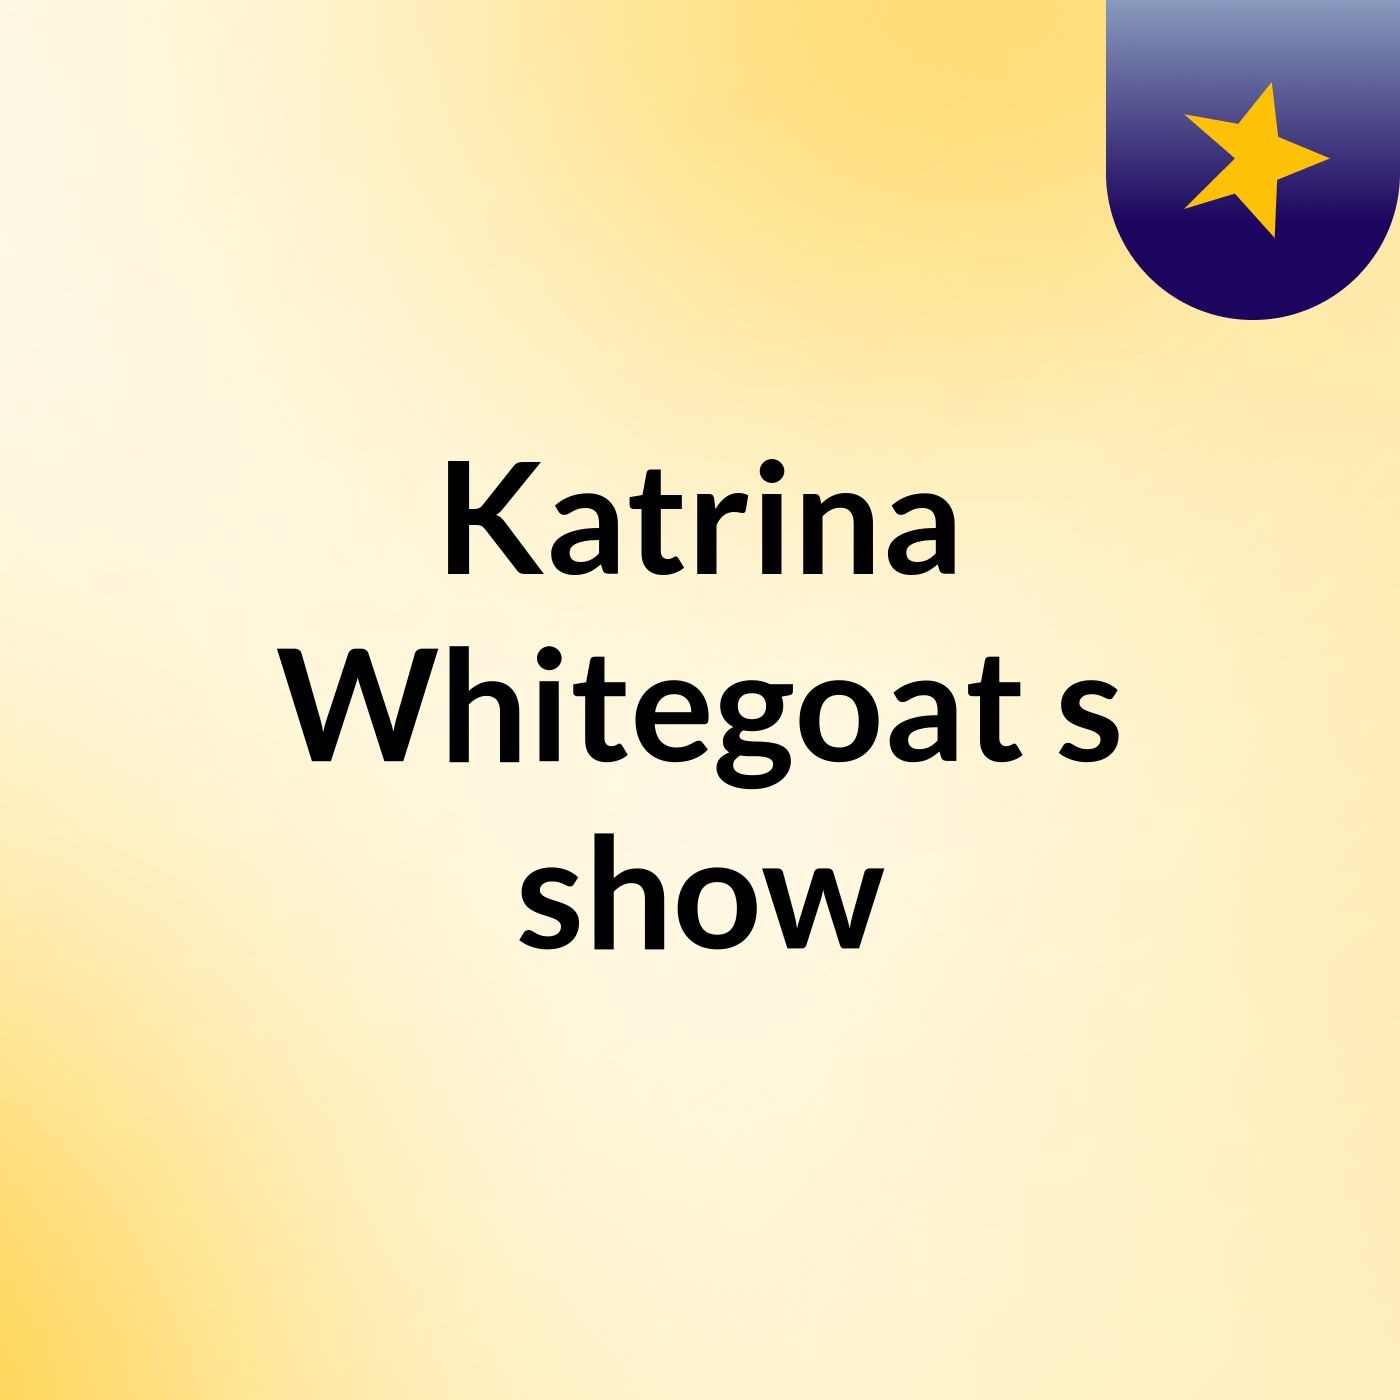 Katrina Whitegoat's show